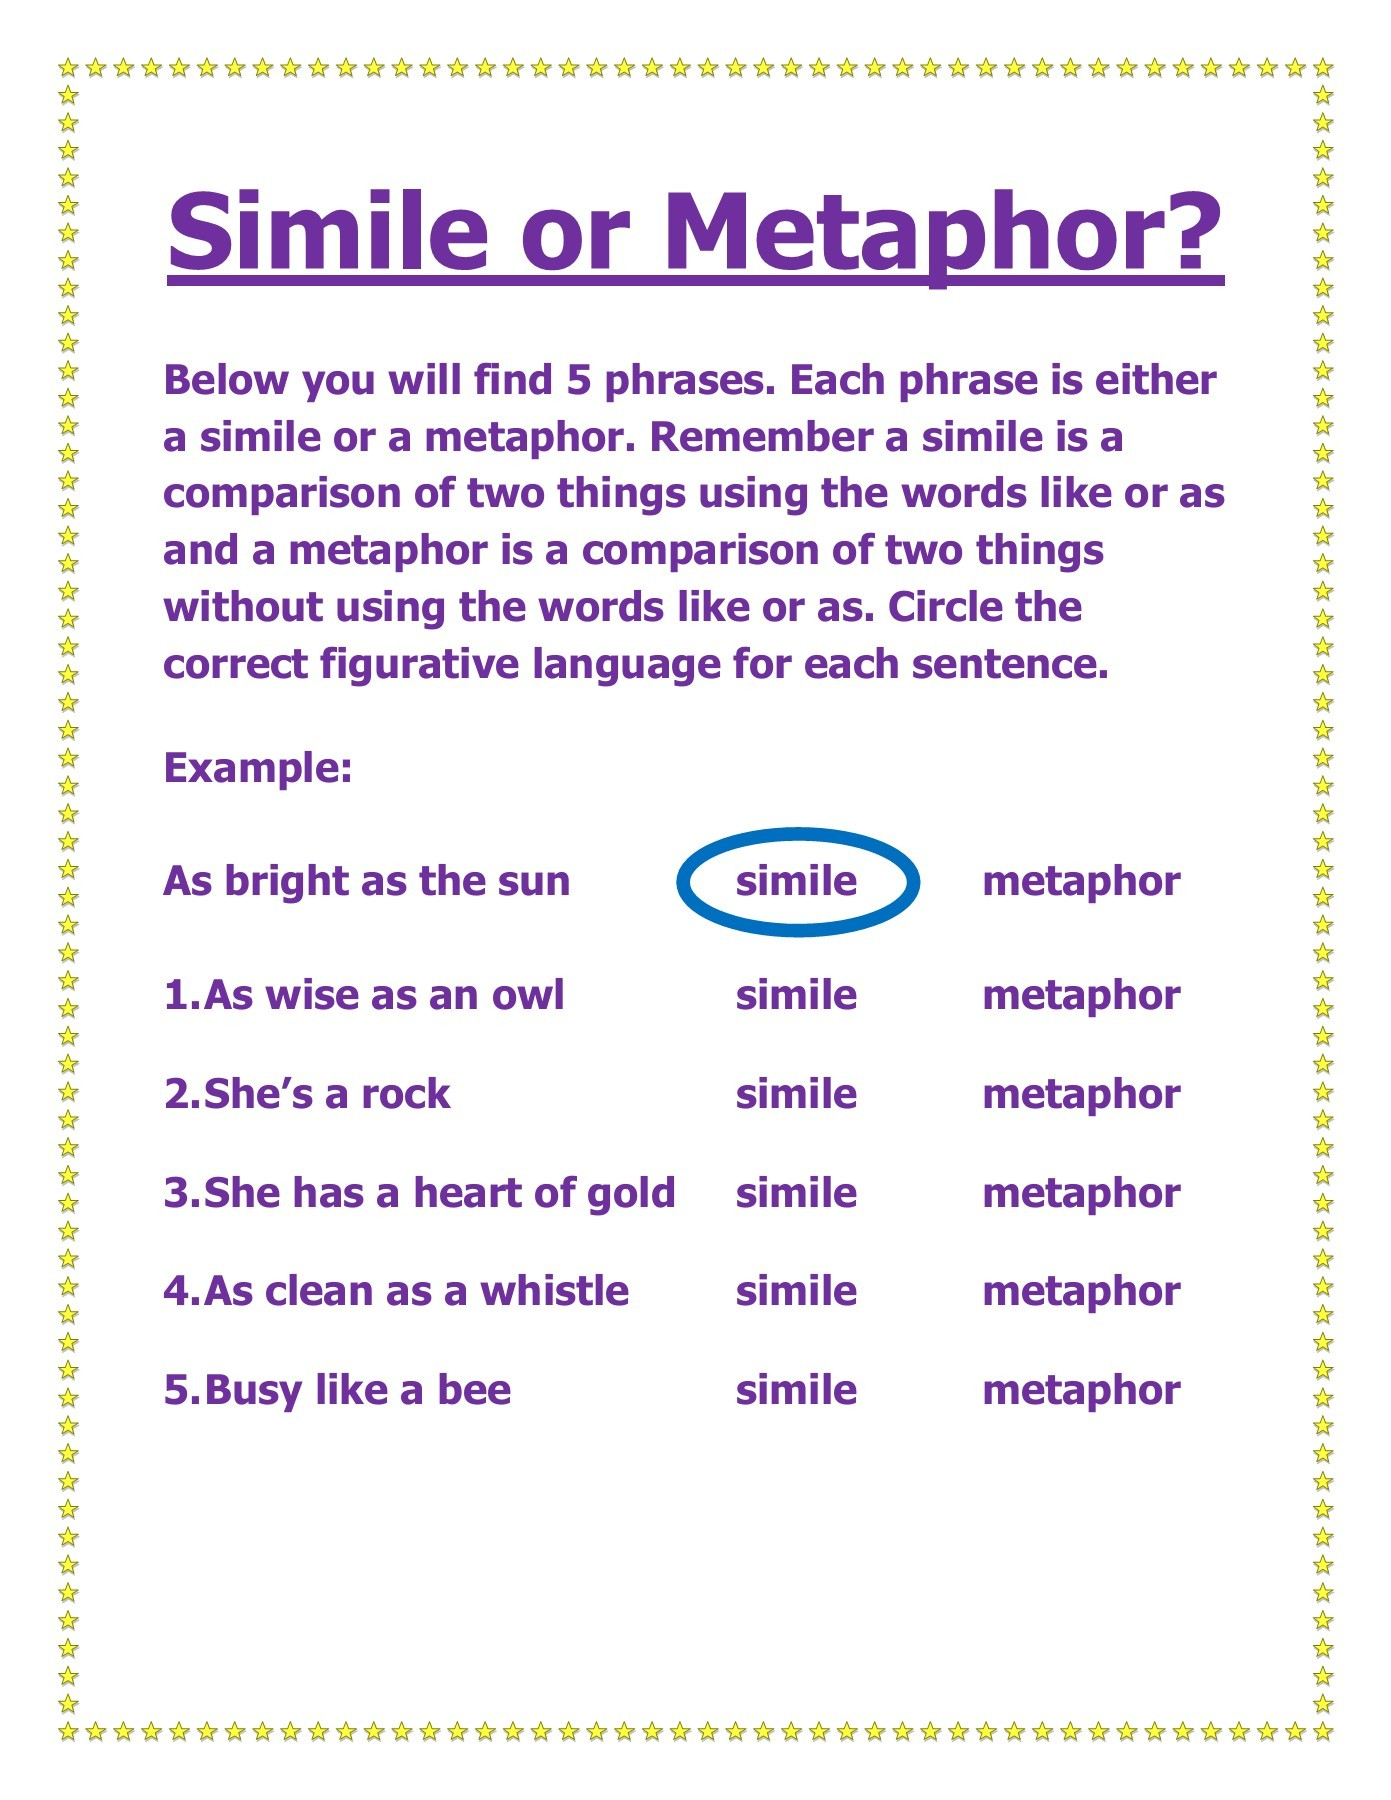 metaphor-sentence-examples-metaphor-examples